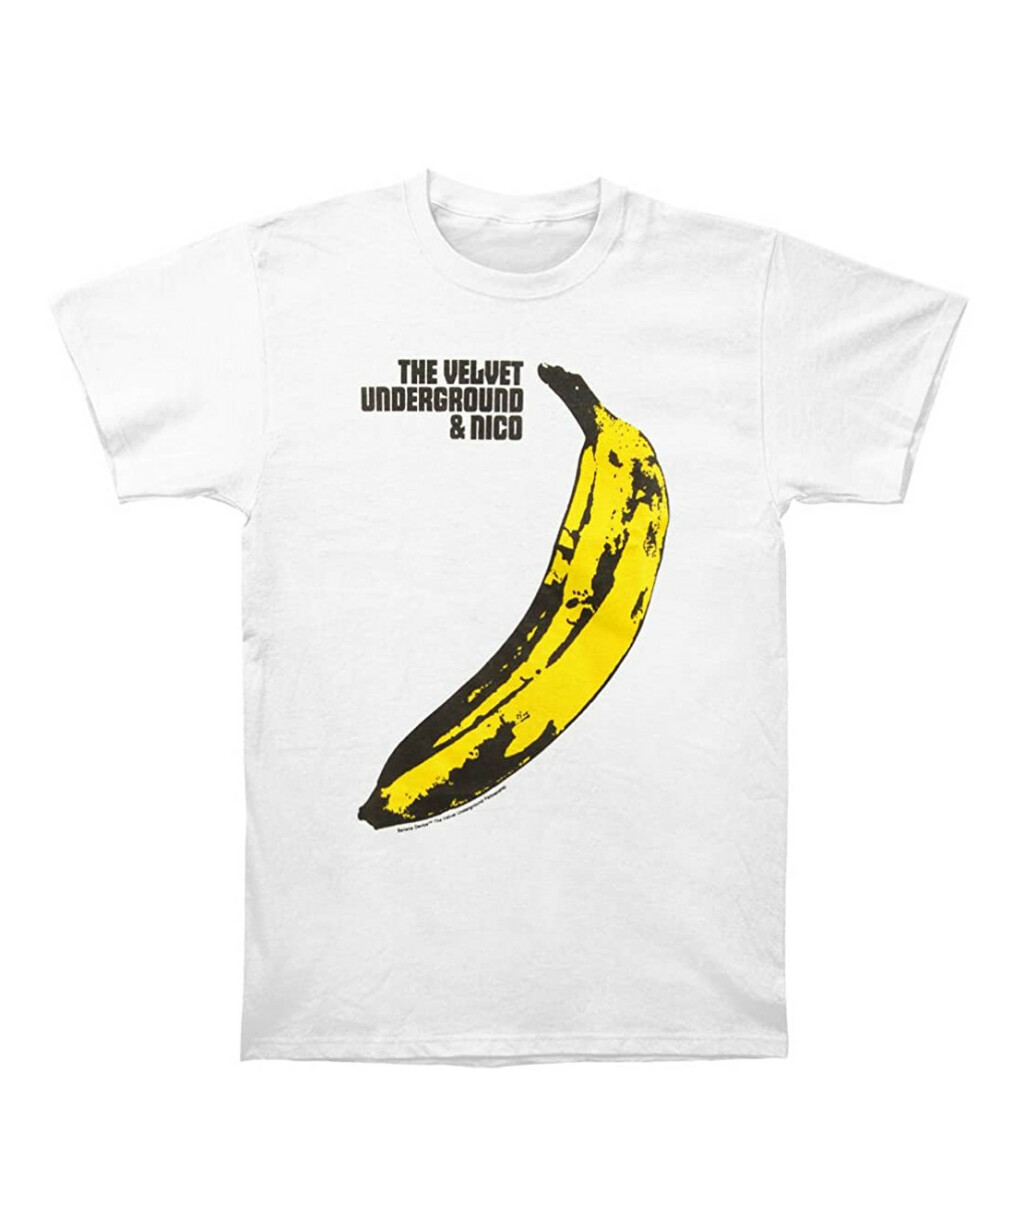 Majica s naslovnicom albuma The Velvet Underground & Nico